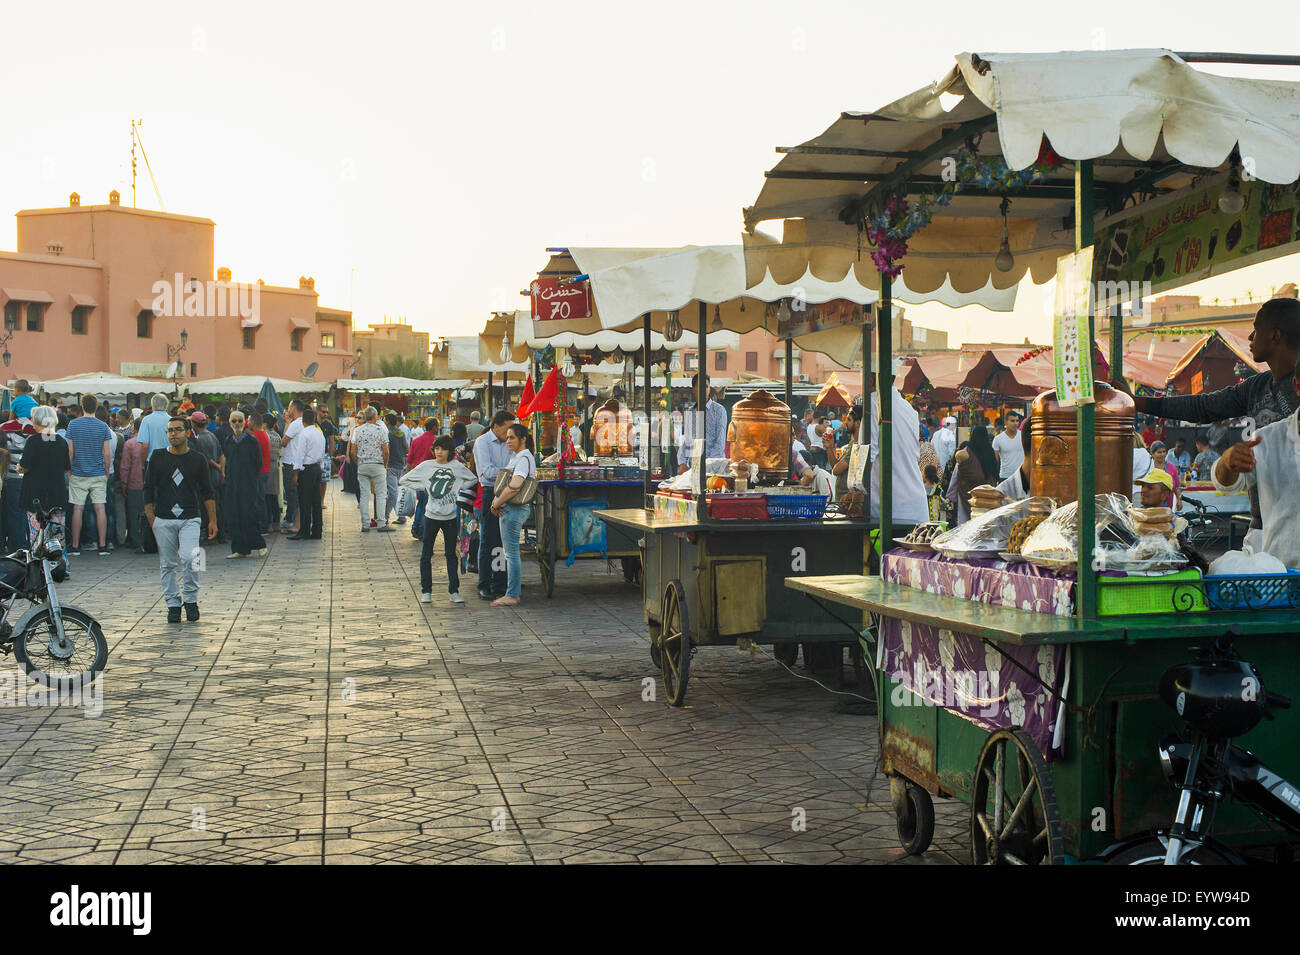 Persone e bancarelle che vendono cibo, Djemaa el Fna, sito Patrimonio Mondiale dell'UNESCO, Marrakech, Marocco Foto Stock